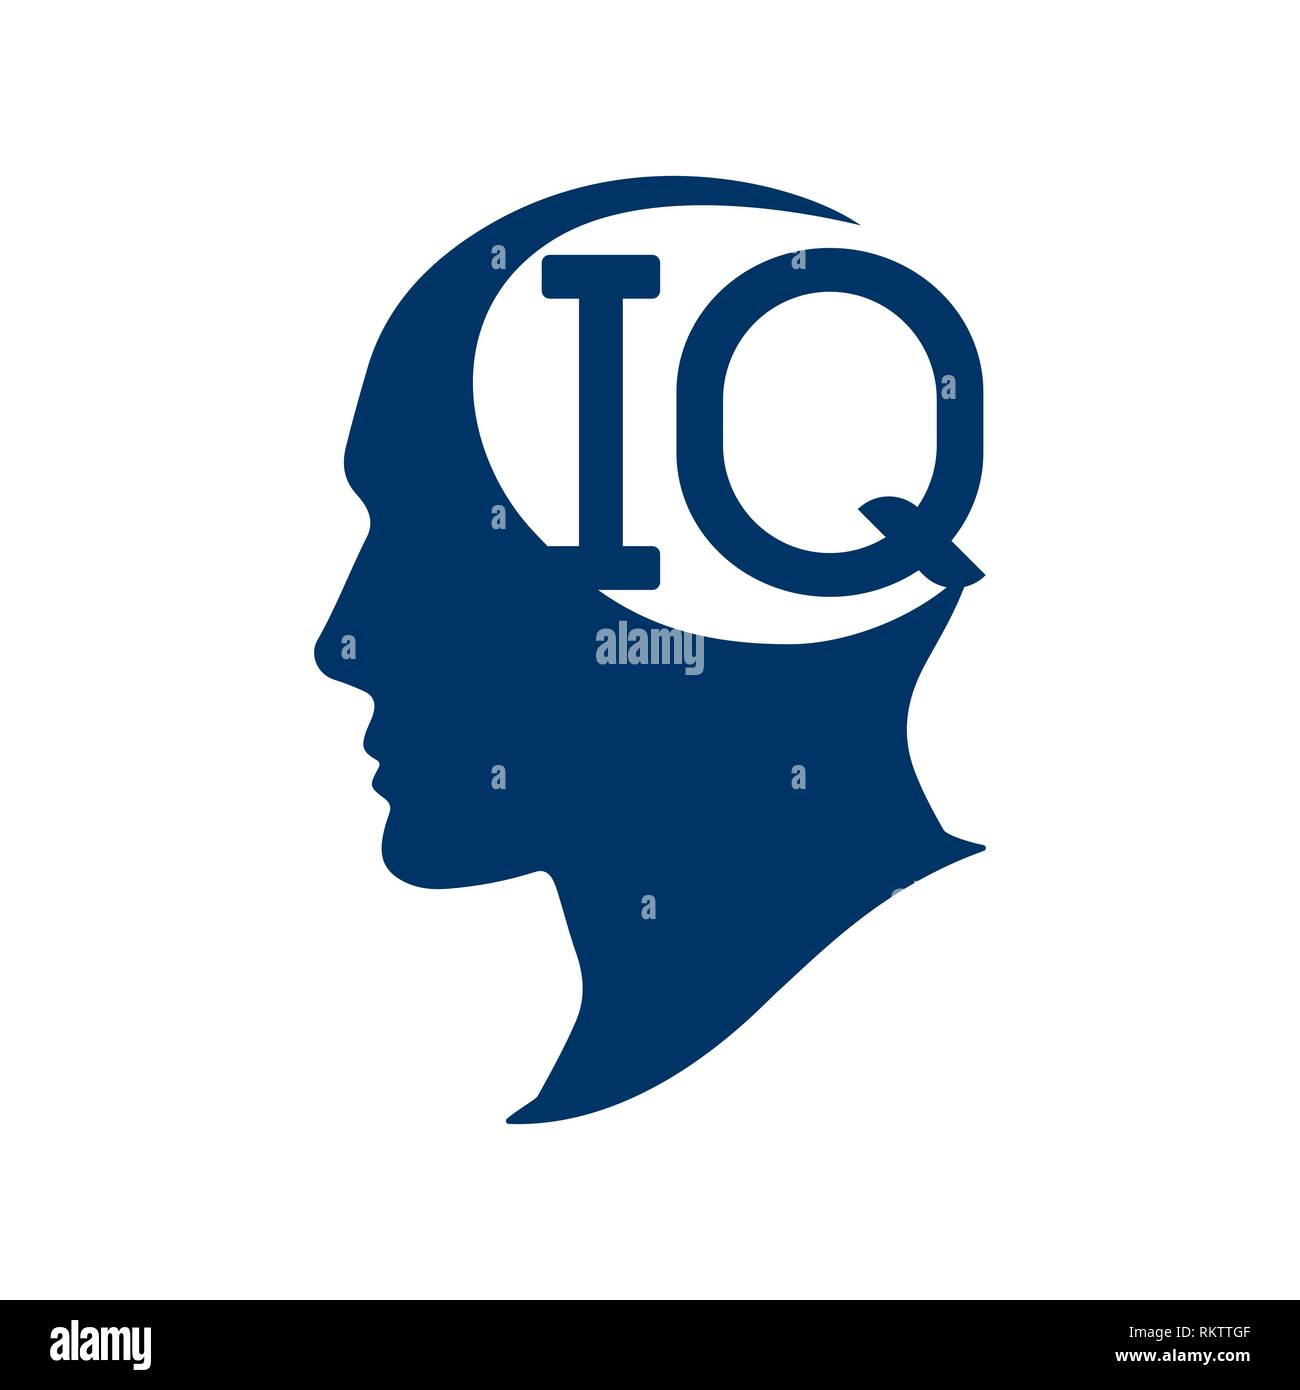 Iq intelligence Banque de photographies et d'images à haute